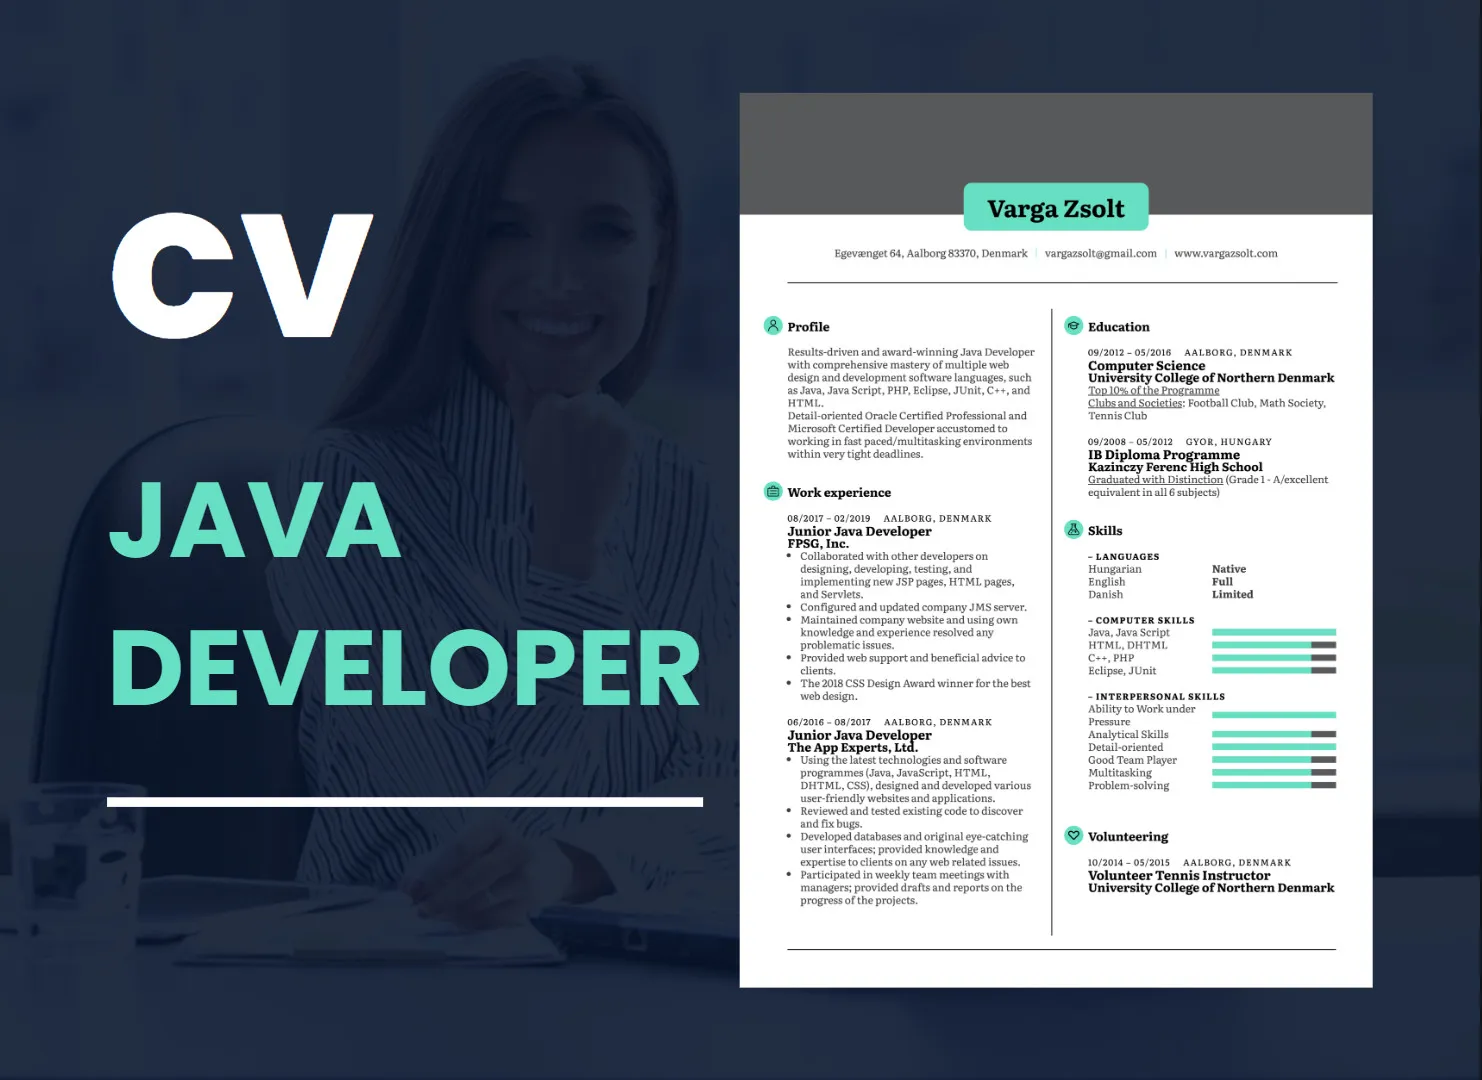 Cách Viết CV Java Developer Chuẩn Săn Việc Hiệu Quả